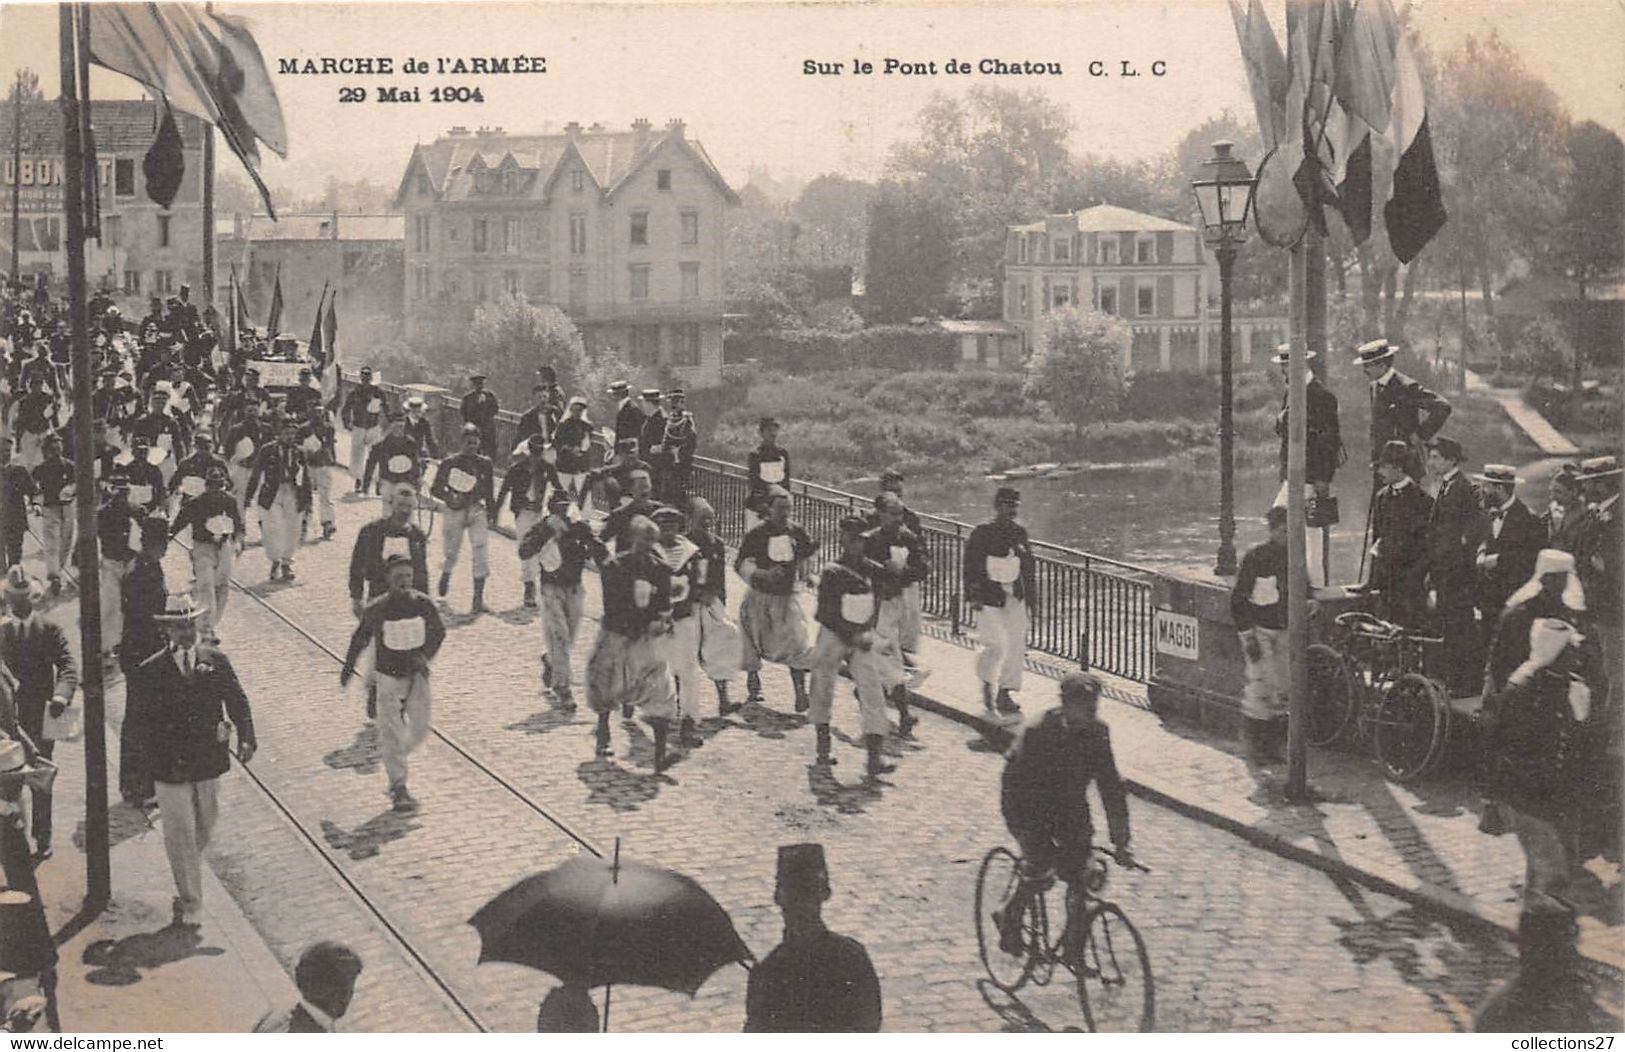 78-CHATOU-MARCHE DE L’ARMÉE 29 MAI 1904 SUR LE PONT DE CHATOU - Chatou